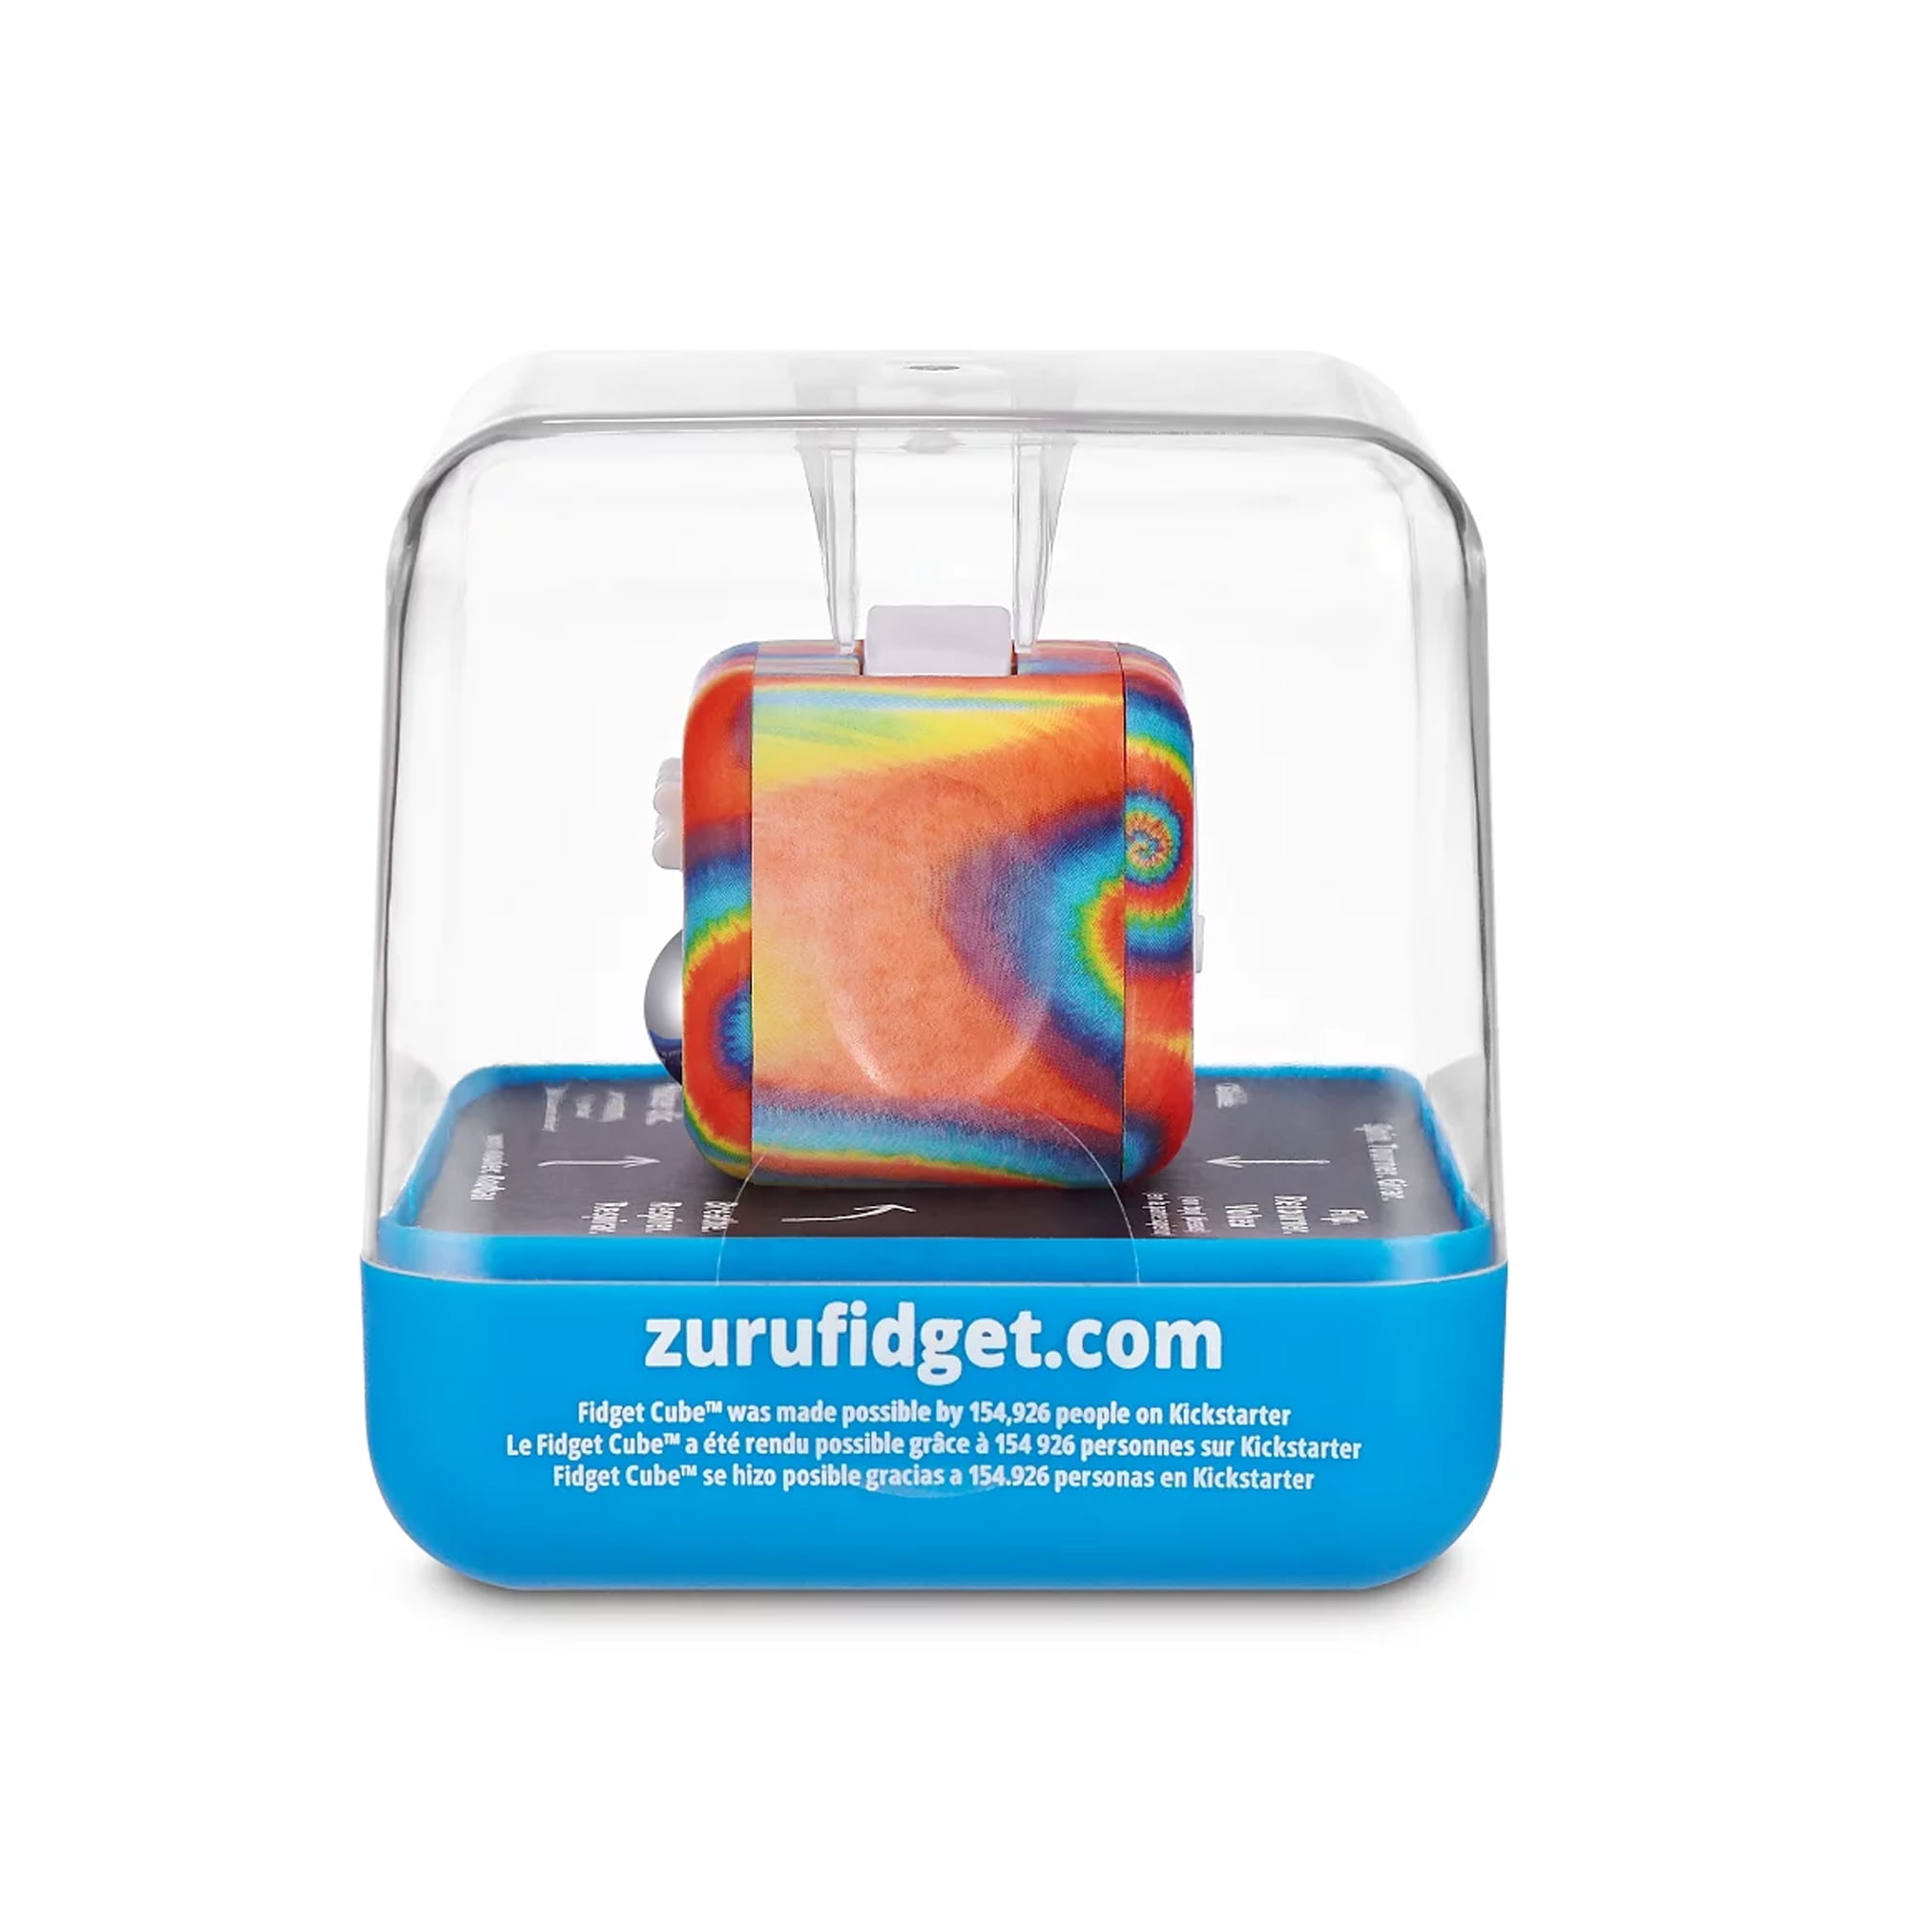 Get Fidget Cubes From Our Original Kickstarter Product Run